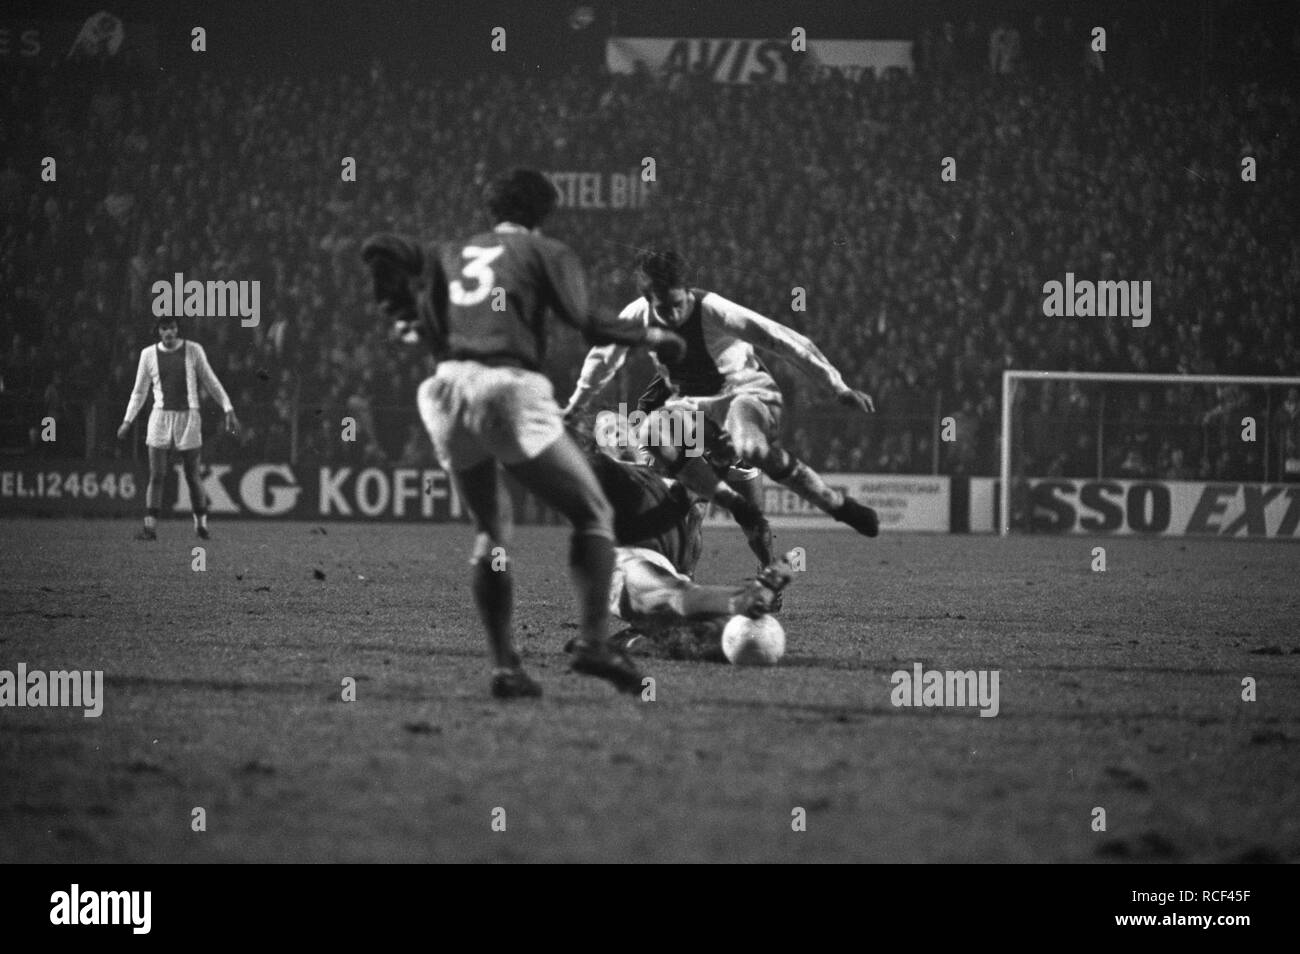 Ajax tegen Go Ahead Eagles 3-0 om KNVB beker Johan Cruijff (rechts) in actie, Bestanddeelnr 925-3966 Stock - Alamy